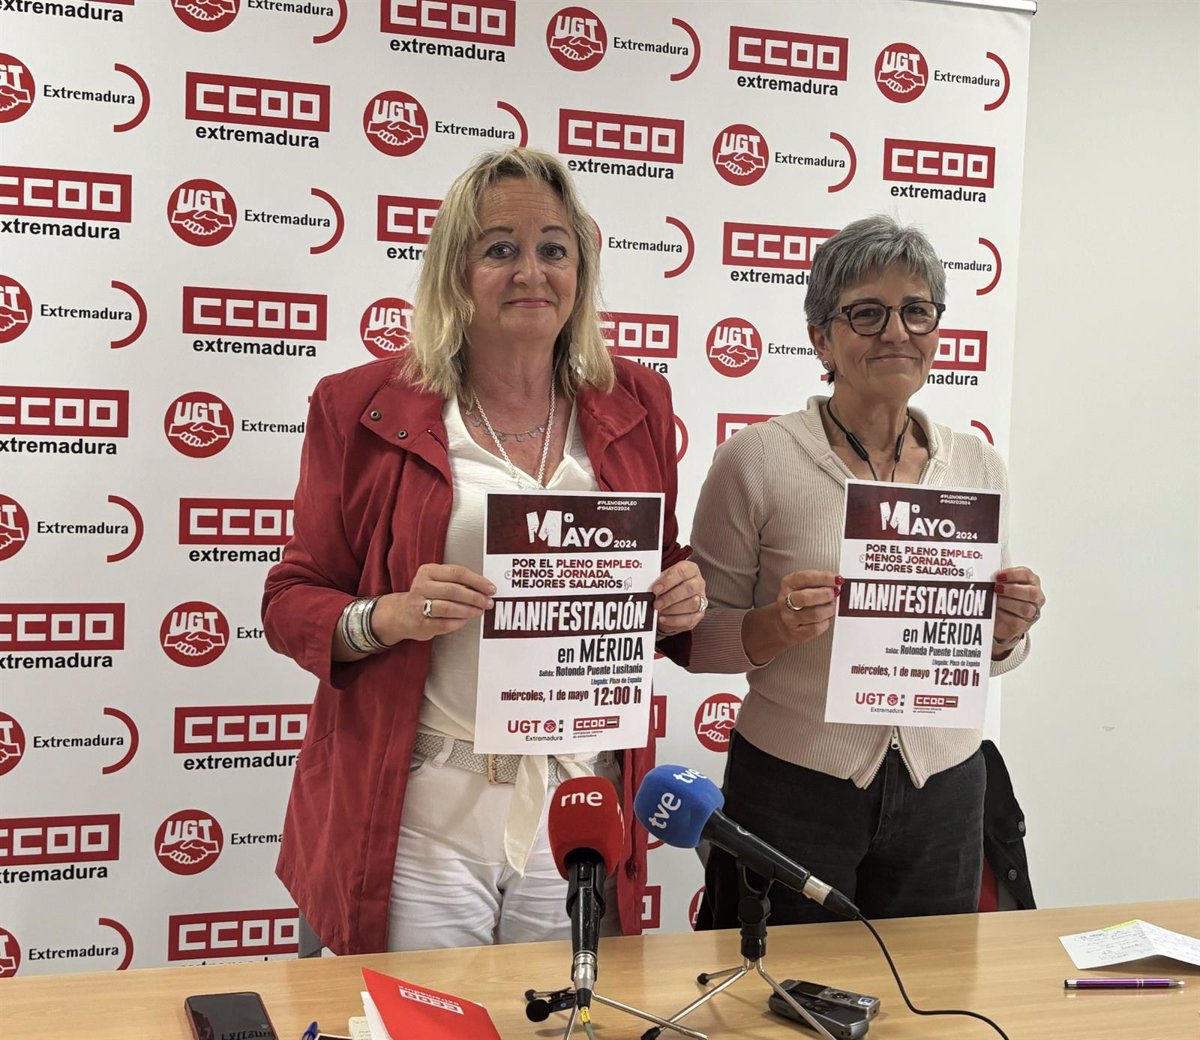 UGT y CCOO saldrán el 1 de mayo en Extremadura para pedir pleno empleo, mejoras salariales y la reducción de la jornada